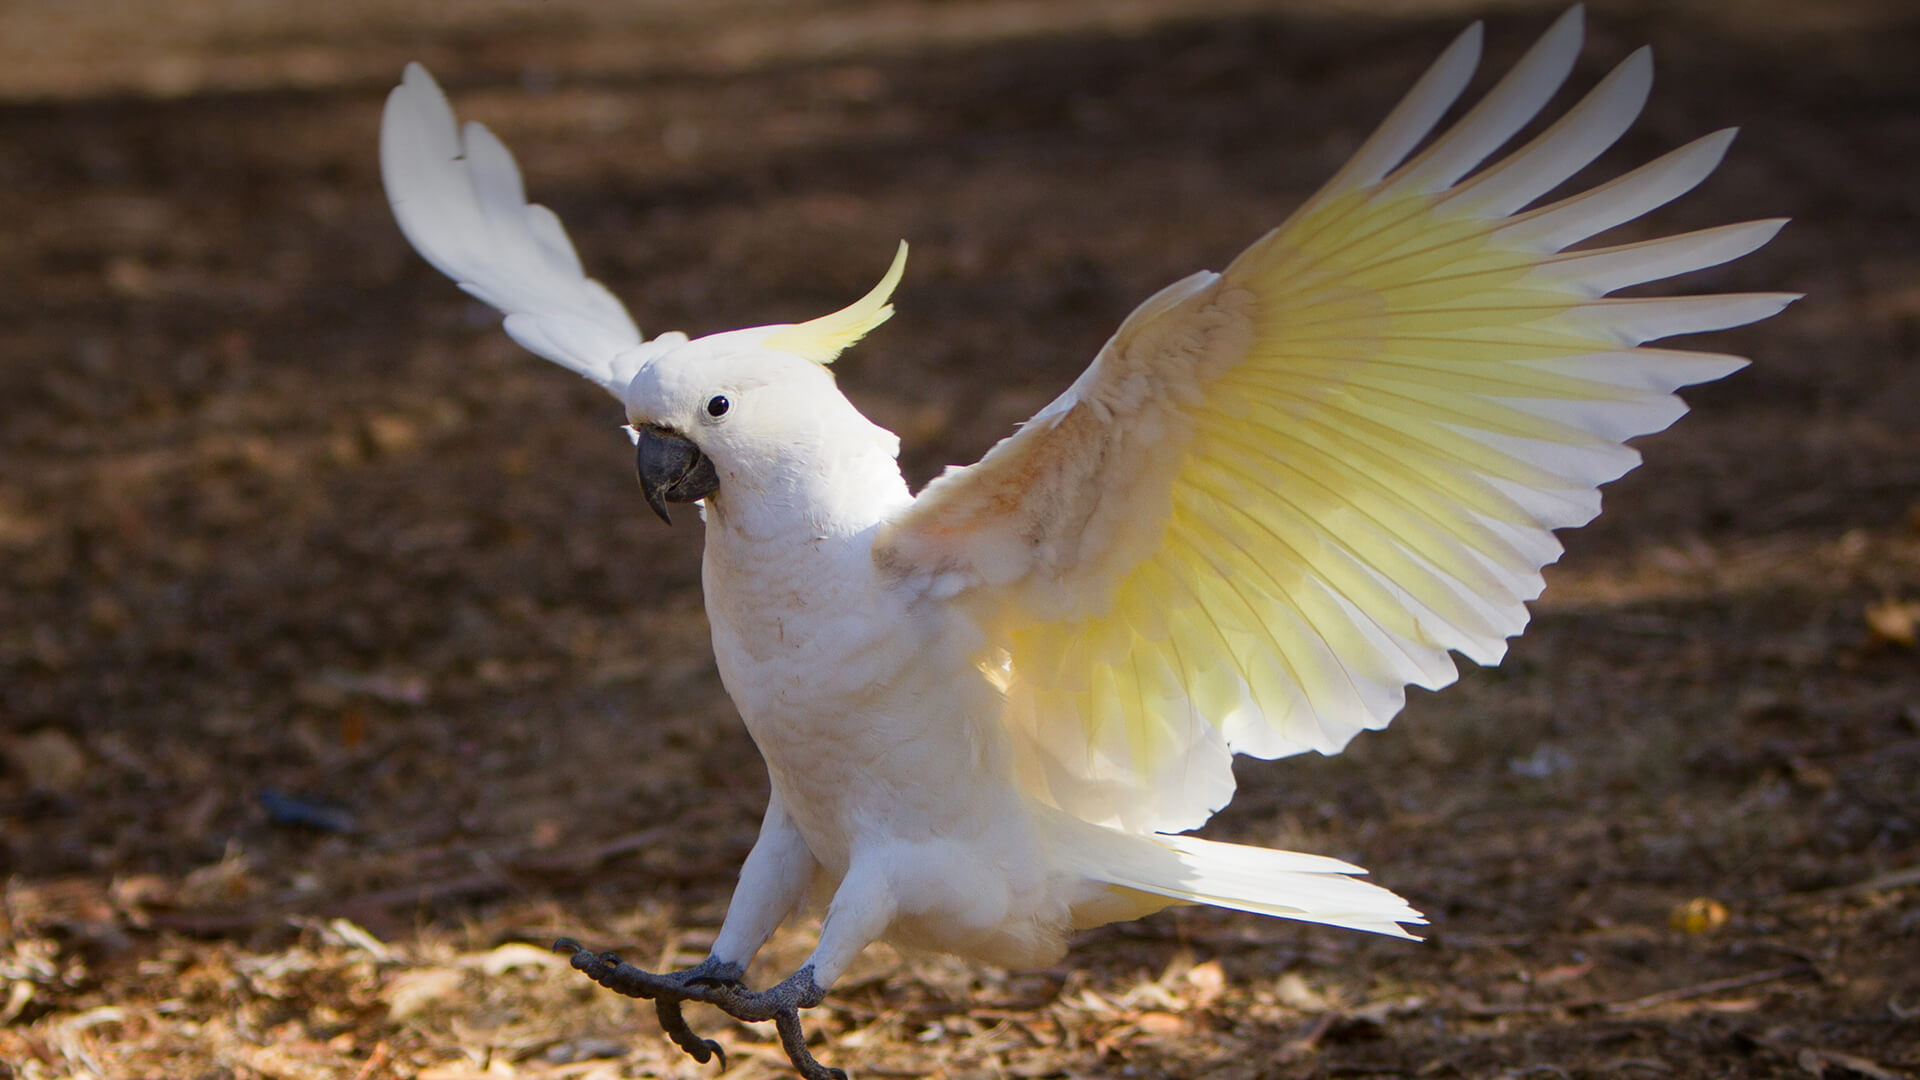 რომელი ცხოველი, ან ფრინველი ხართ დაბადების თვის მიხედვით და რას ამბობს ეს თქვენს შესახებ?